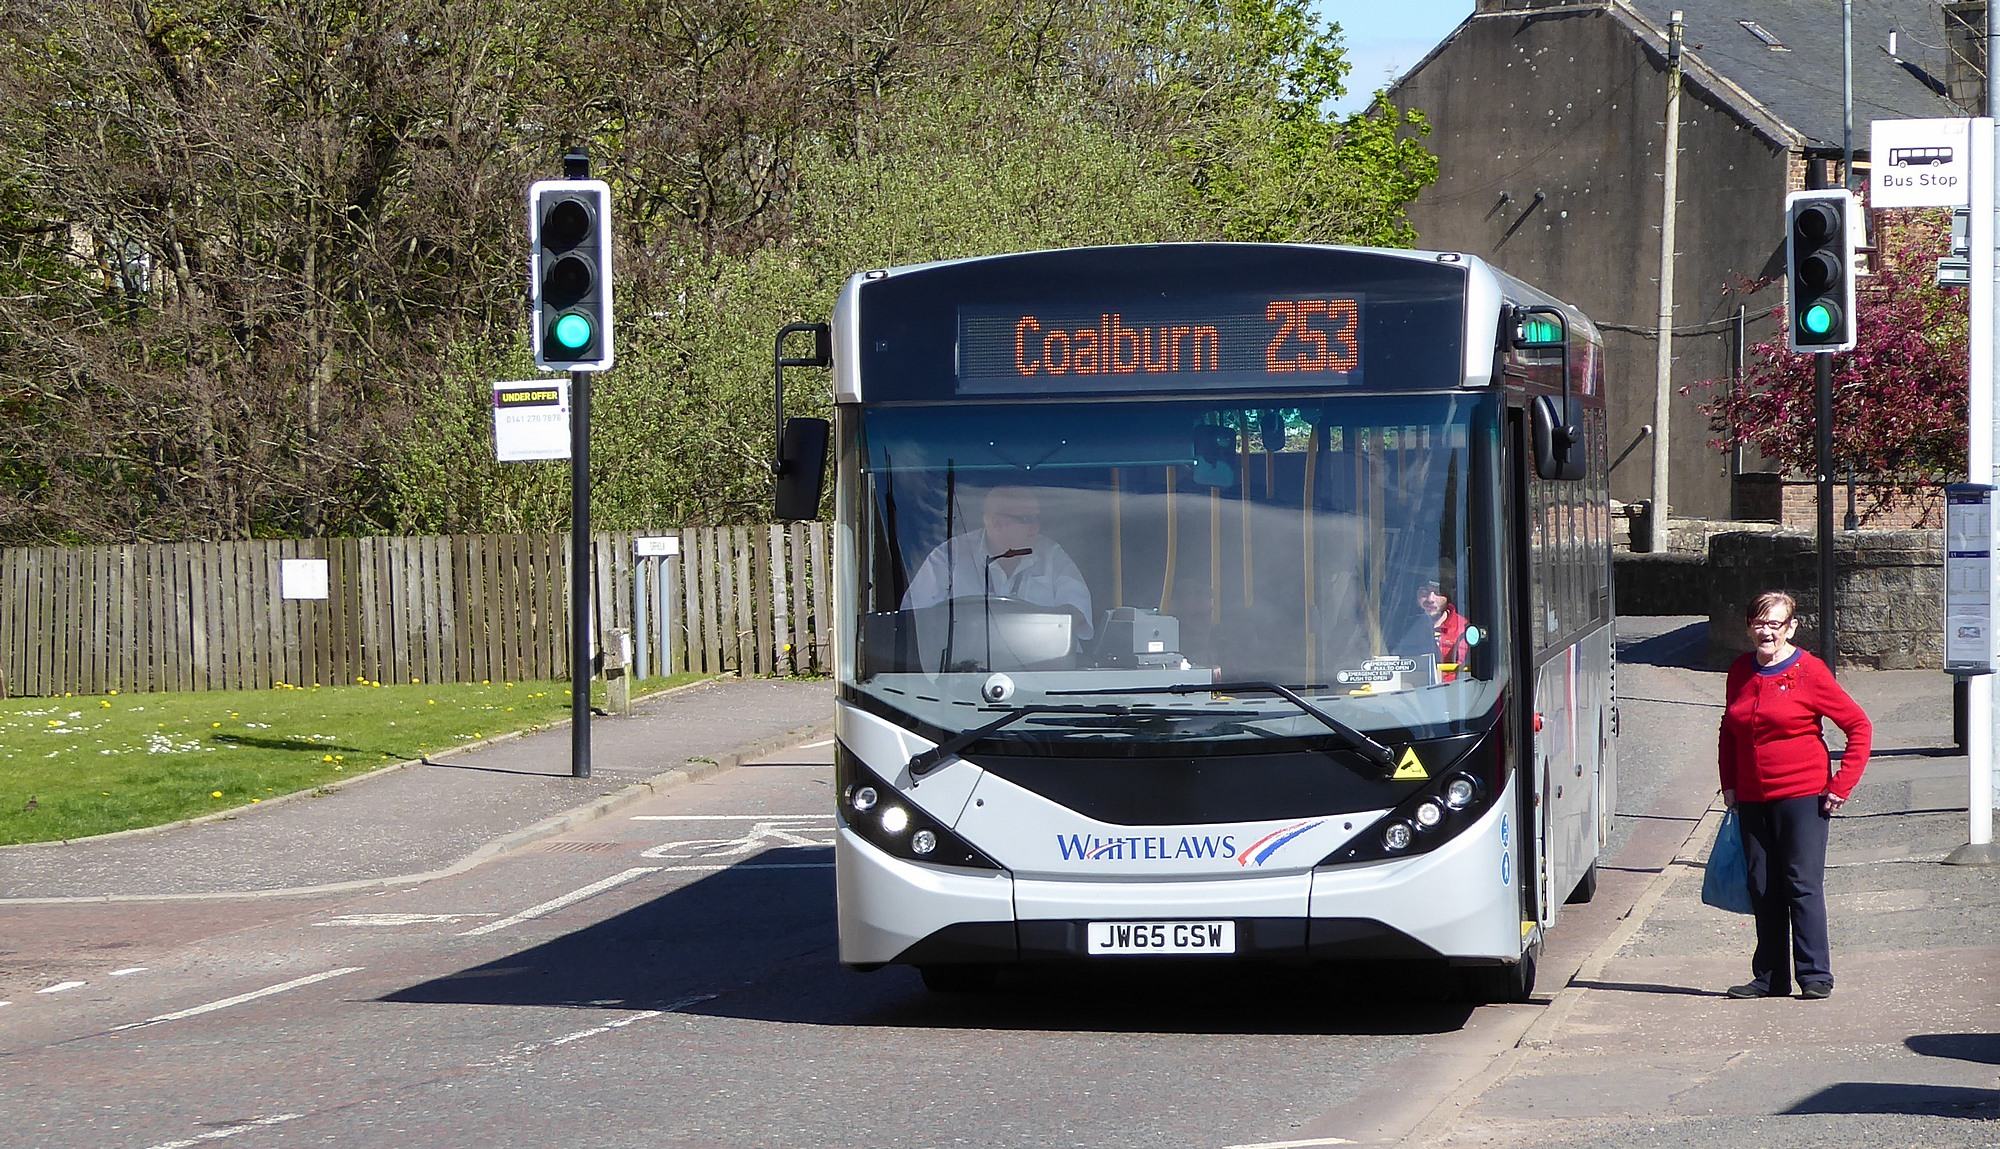 253 Coalburn bus in Turfholm